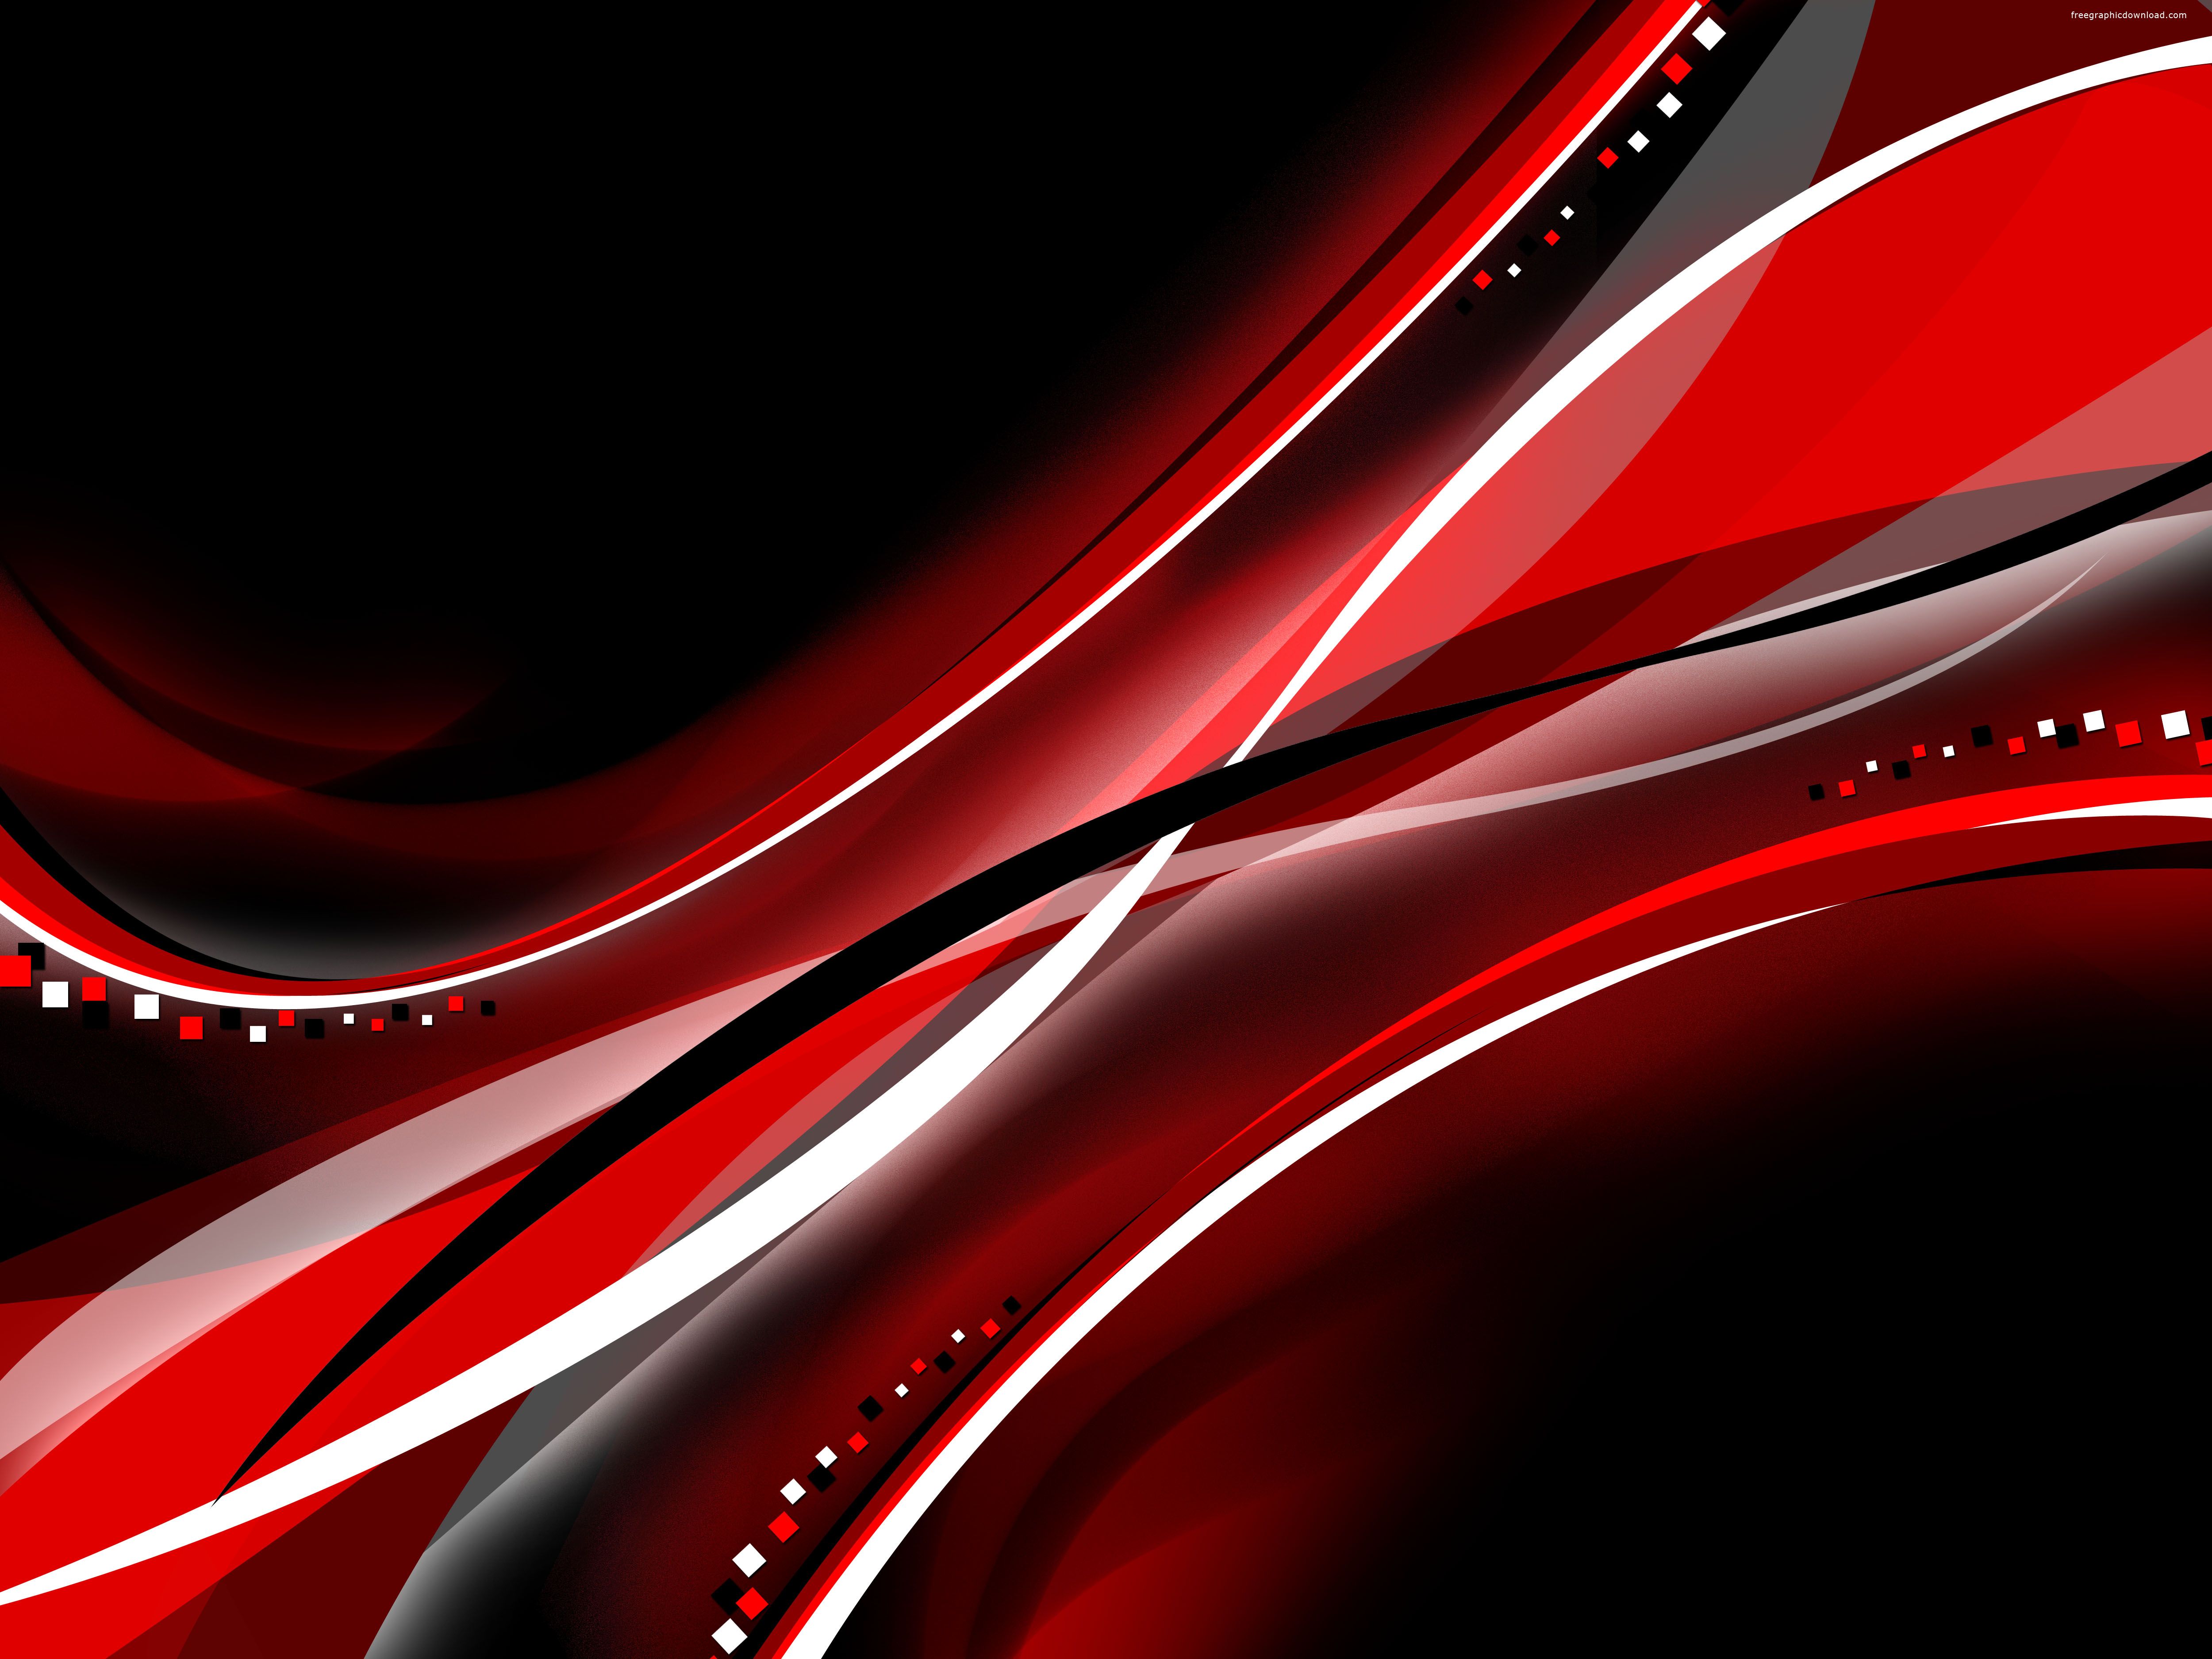 Một hình nền trừu tượng đen đỏ sẽ giúp bạn trang trí màn hình của mình với những hình dạng độc đáo và hấp dẫn. Hãy tìm hiểu thêm về nền đen đỏ trừu tượng này và cảm nhận sự cuốn hút của nó.